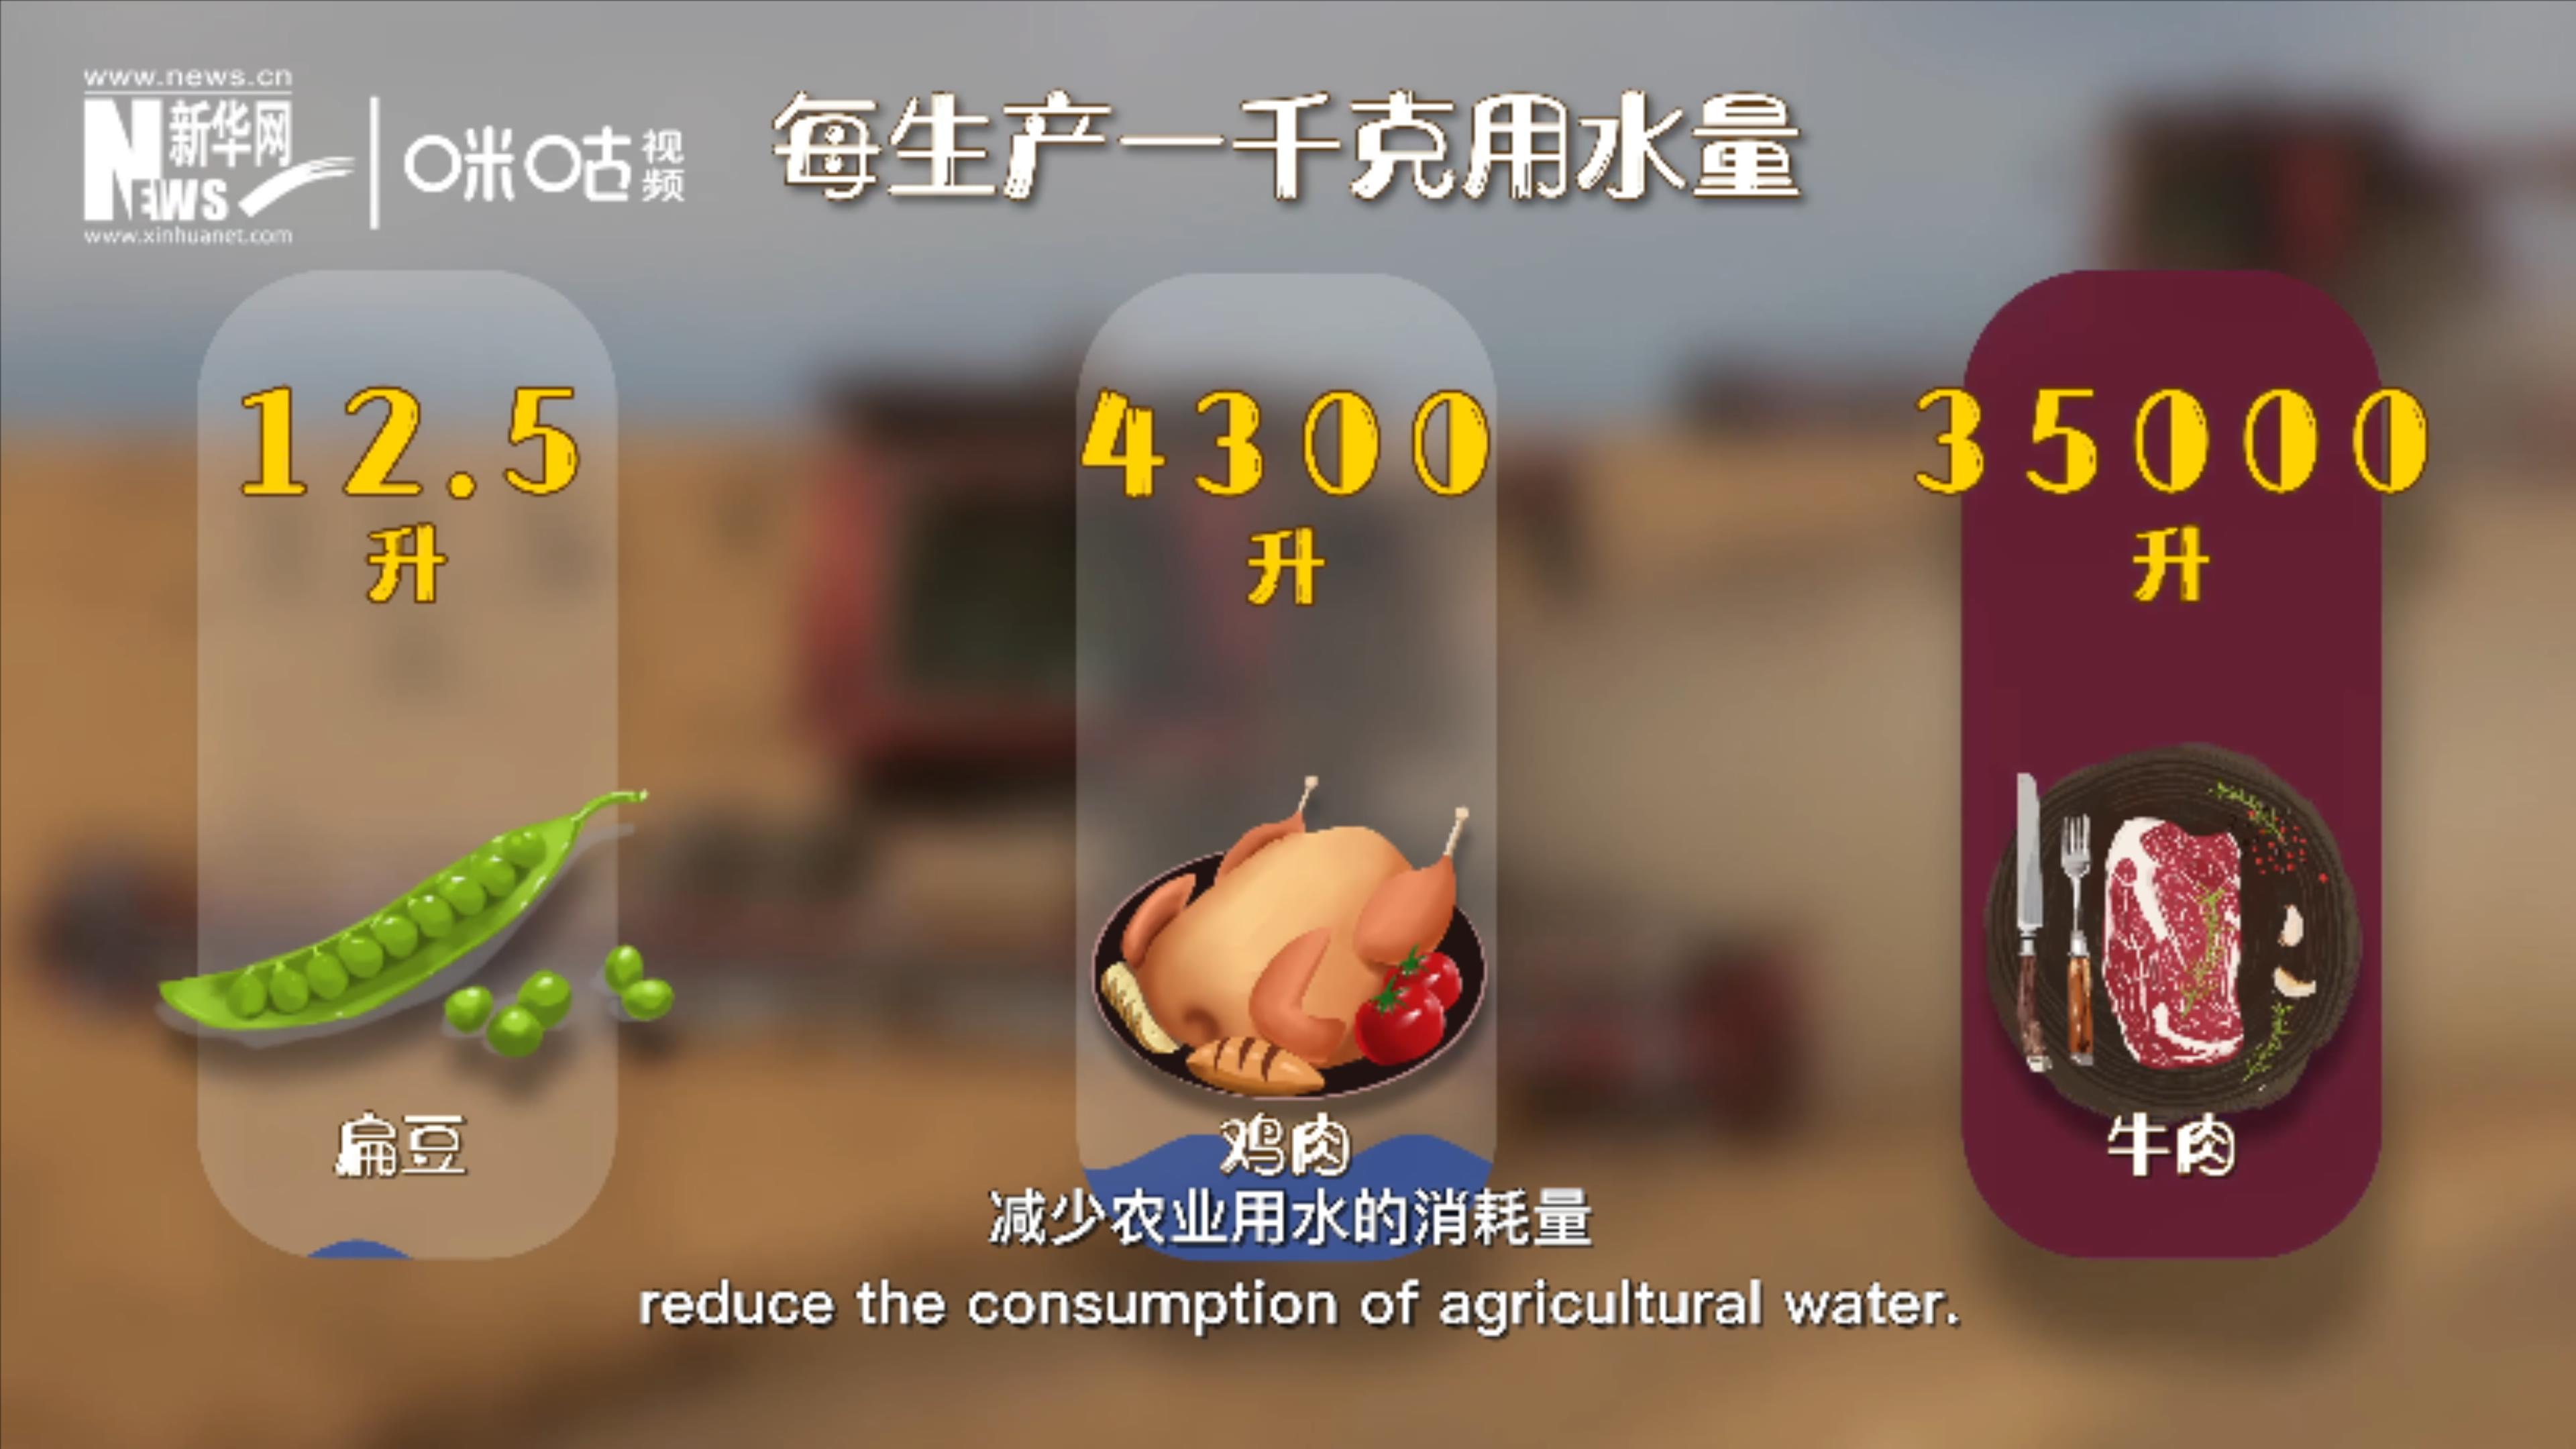 種植豆類可有效減少農業用水的消耗量